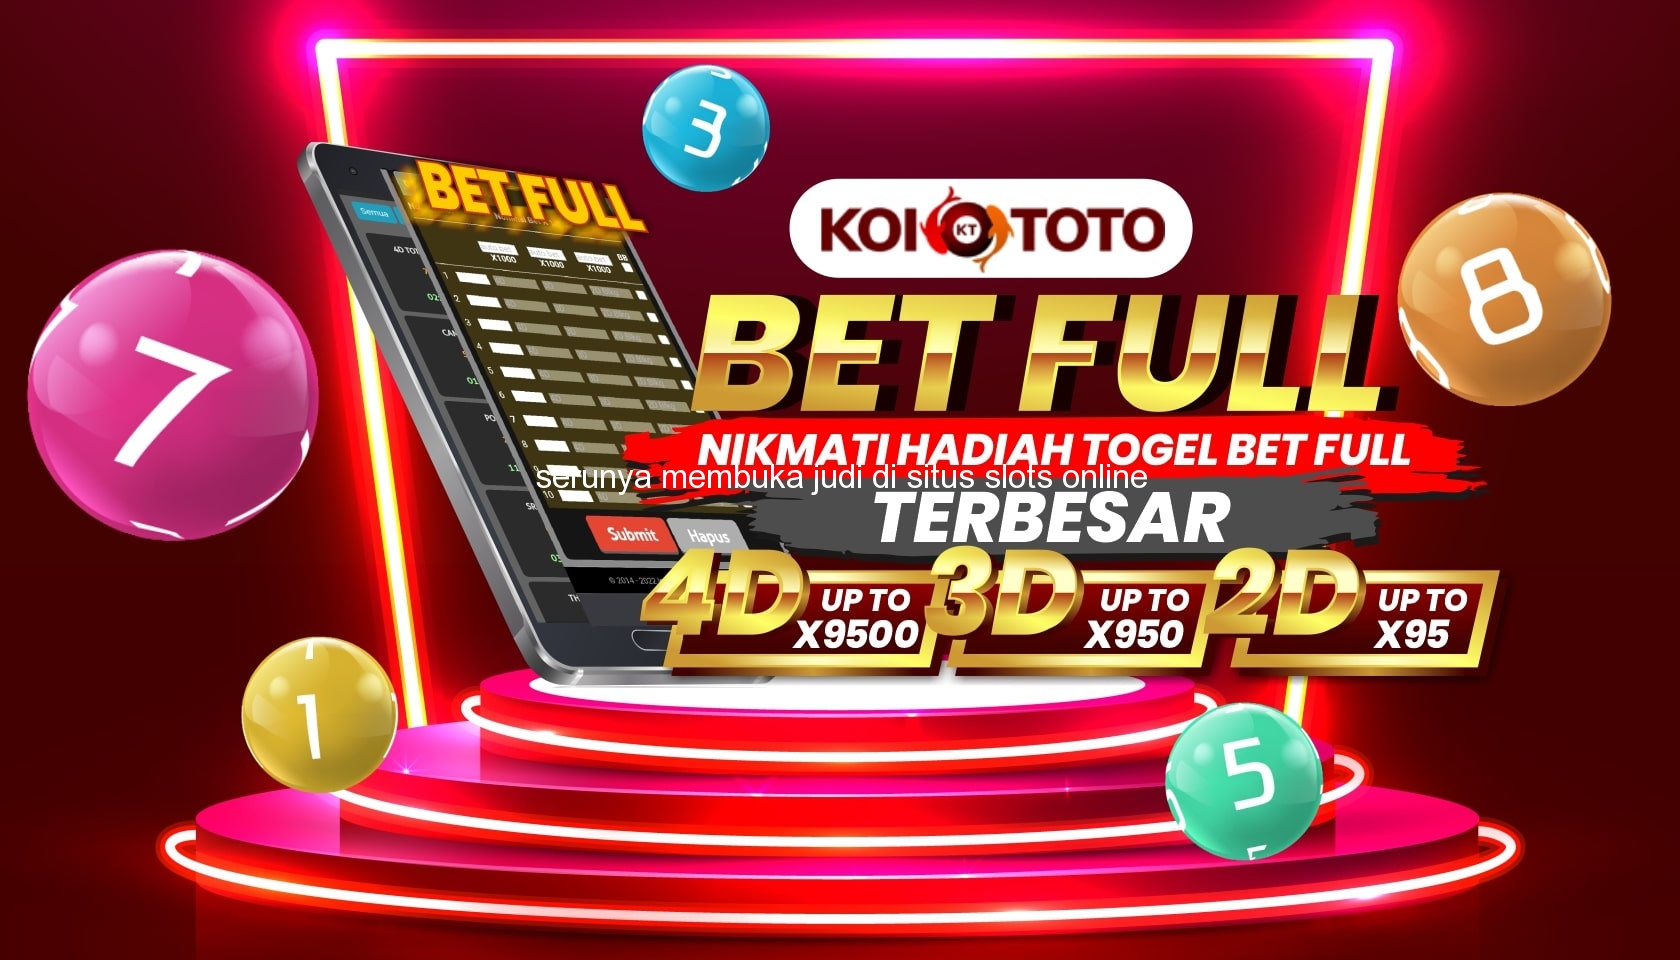 Serunya Membuka Judi di Situs Slots Online Terbaik di Bobotsari – KOITOTO